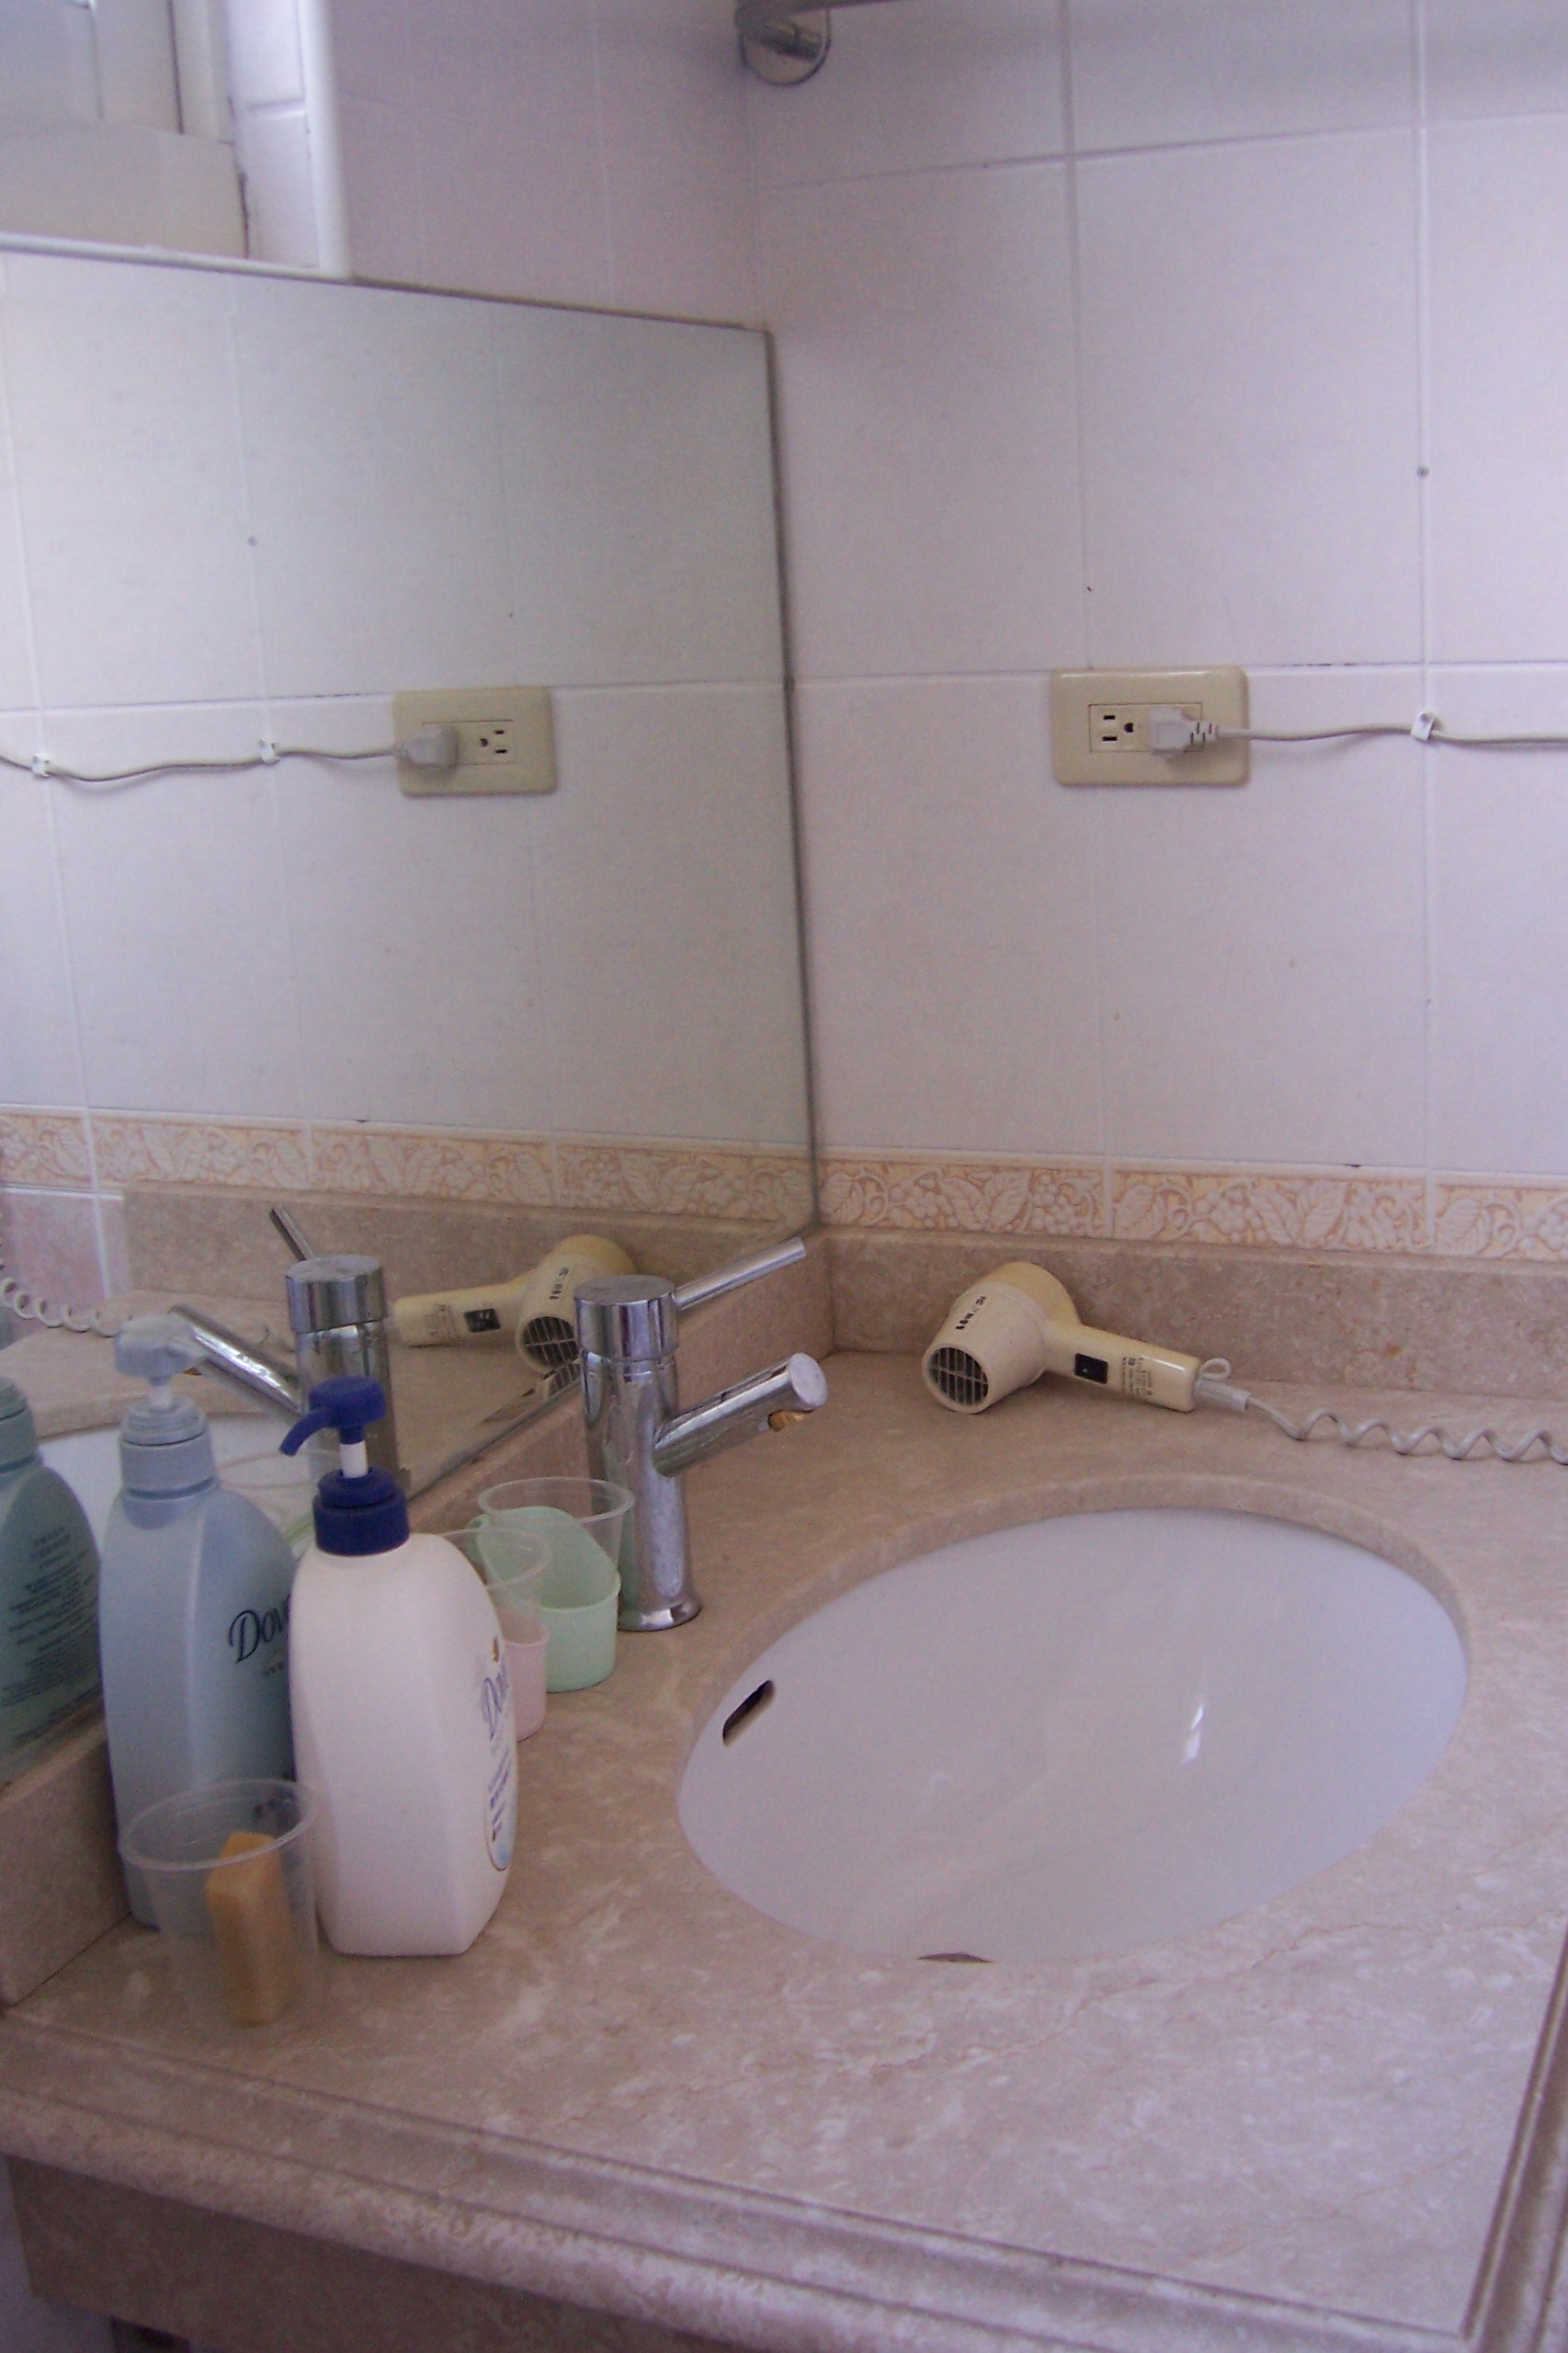 浴巾
淋浴設備
盥洗用品
鏡子
